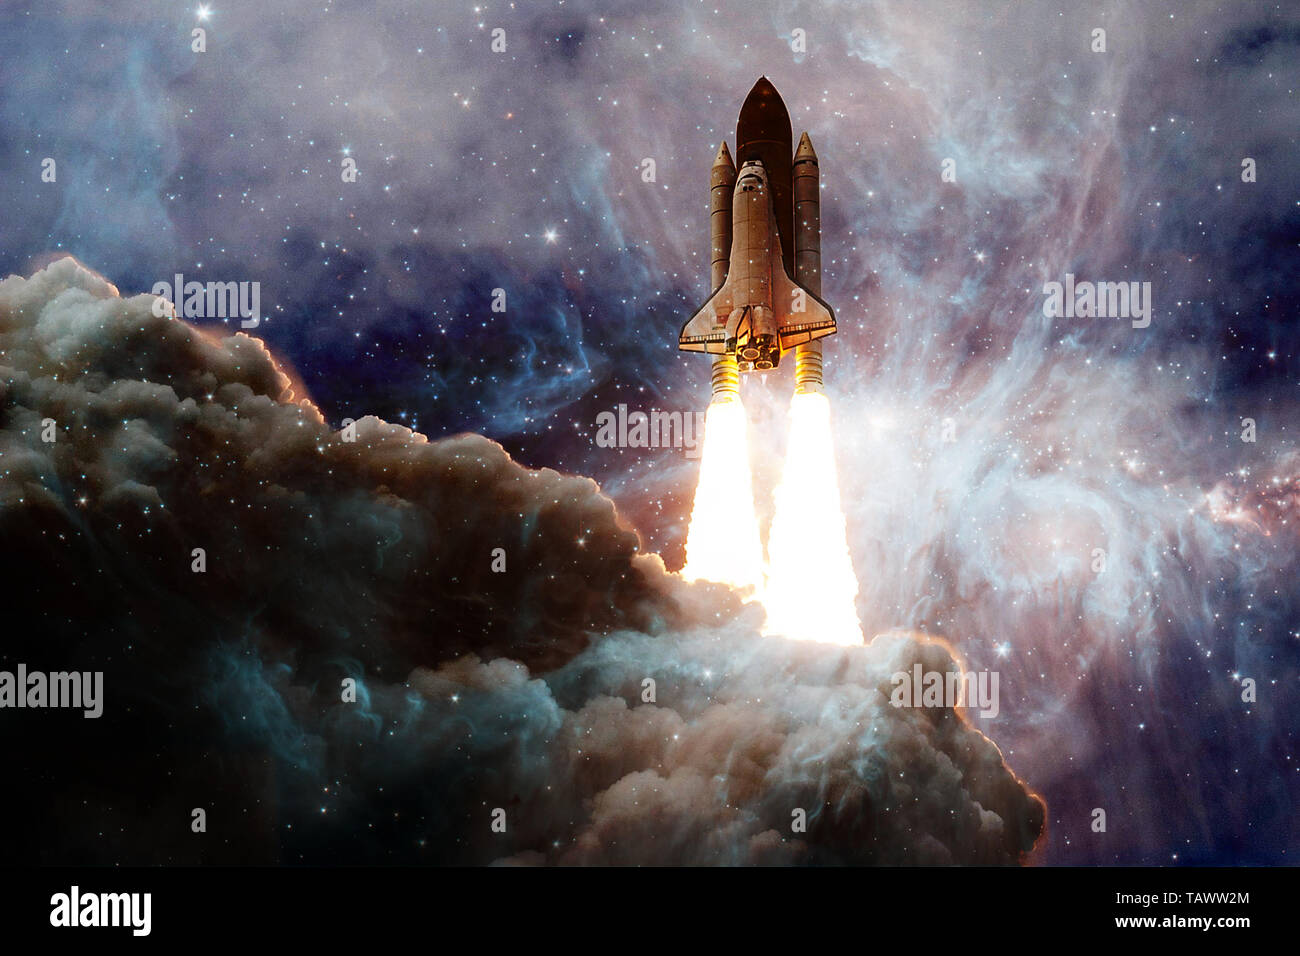 Space Shuttle, die auf einer Mission. Deep Space. Schönheit des unendlichen Universums. Elemente dieses Bild von der NASA eingerichtet Stockfoto